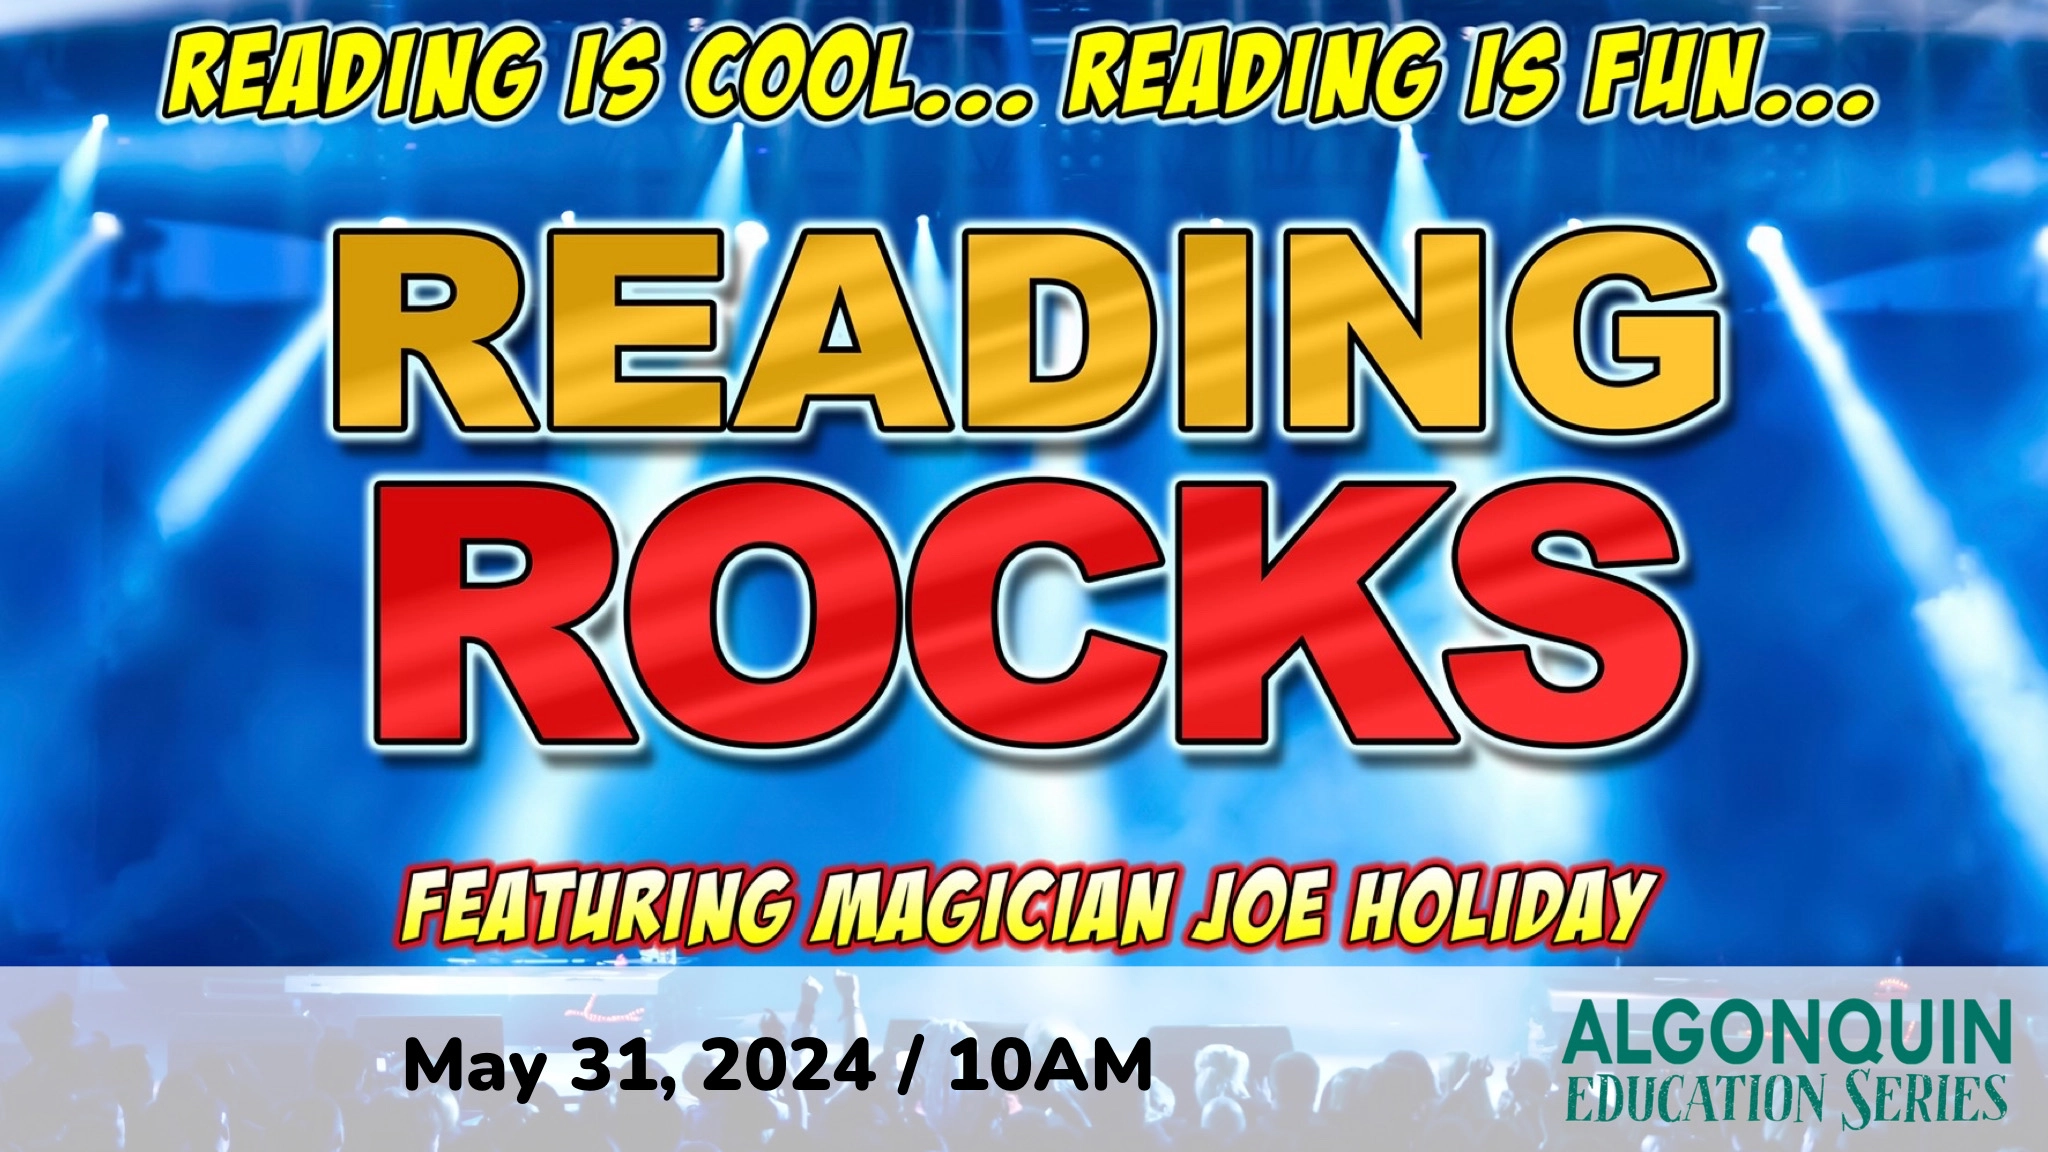 Joe Holiday's Reading Rocks Magic Show